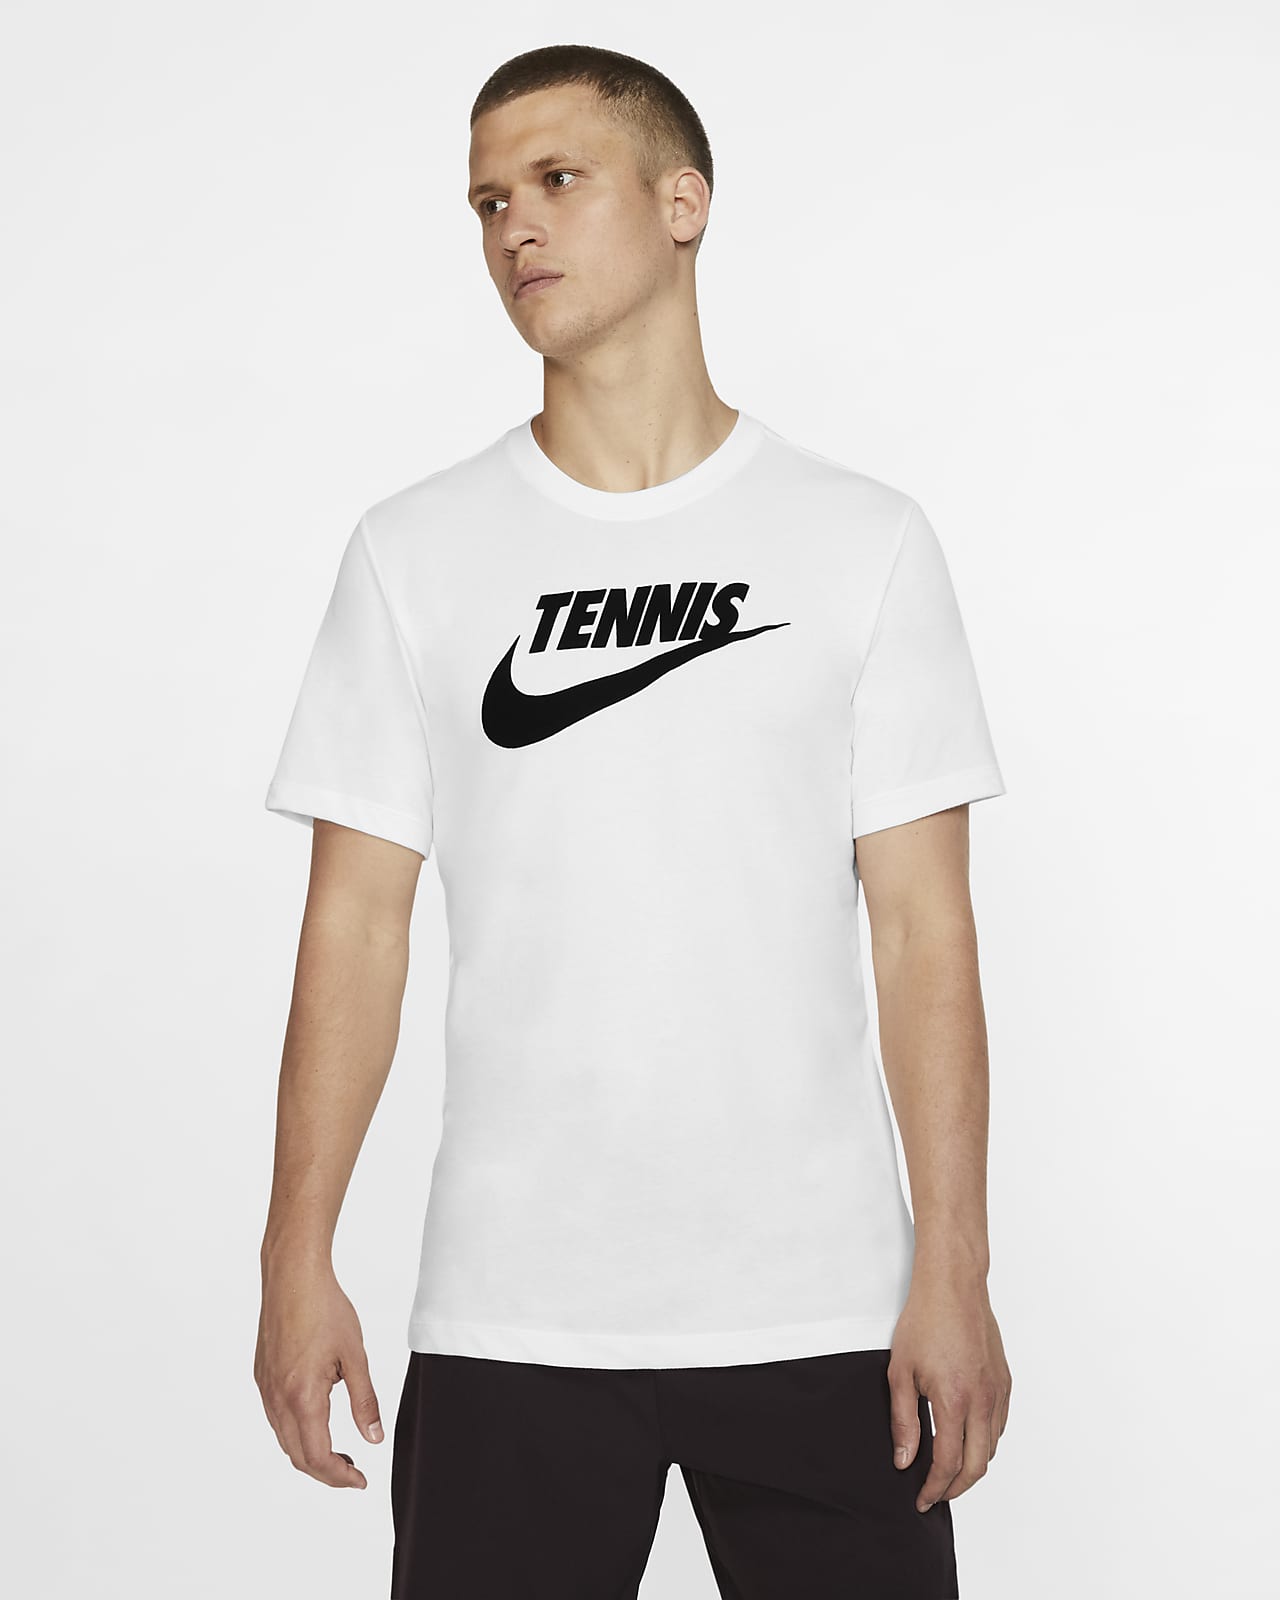 Tee Shirt Nike Tennis Store, 34% -